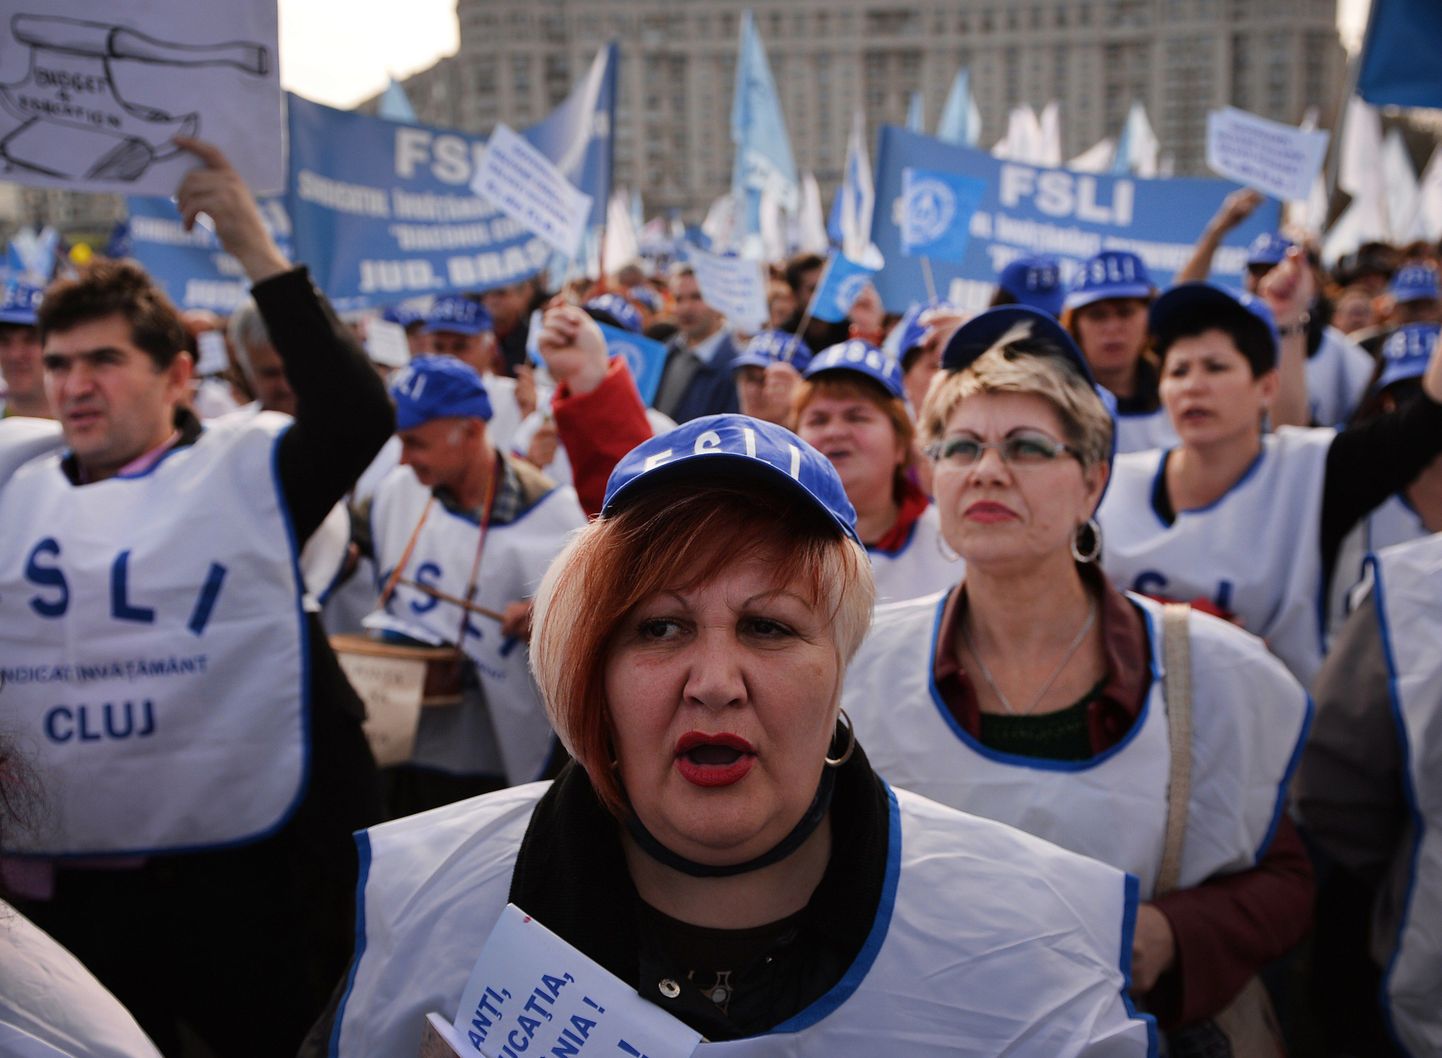 Rumeenia haridustöötajate ametiühingu liikmed nõudsid Bukarestis kõrgemat palka ja paremaid töötingimusi.